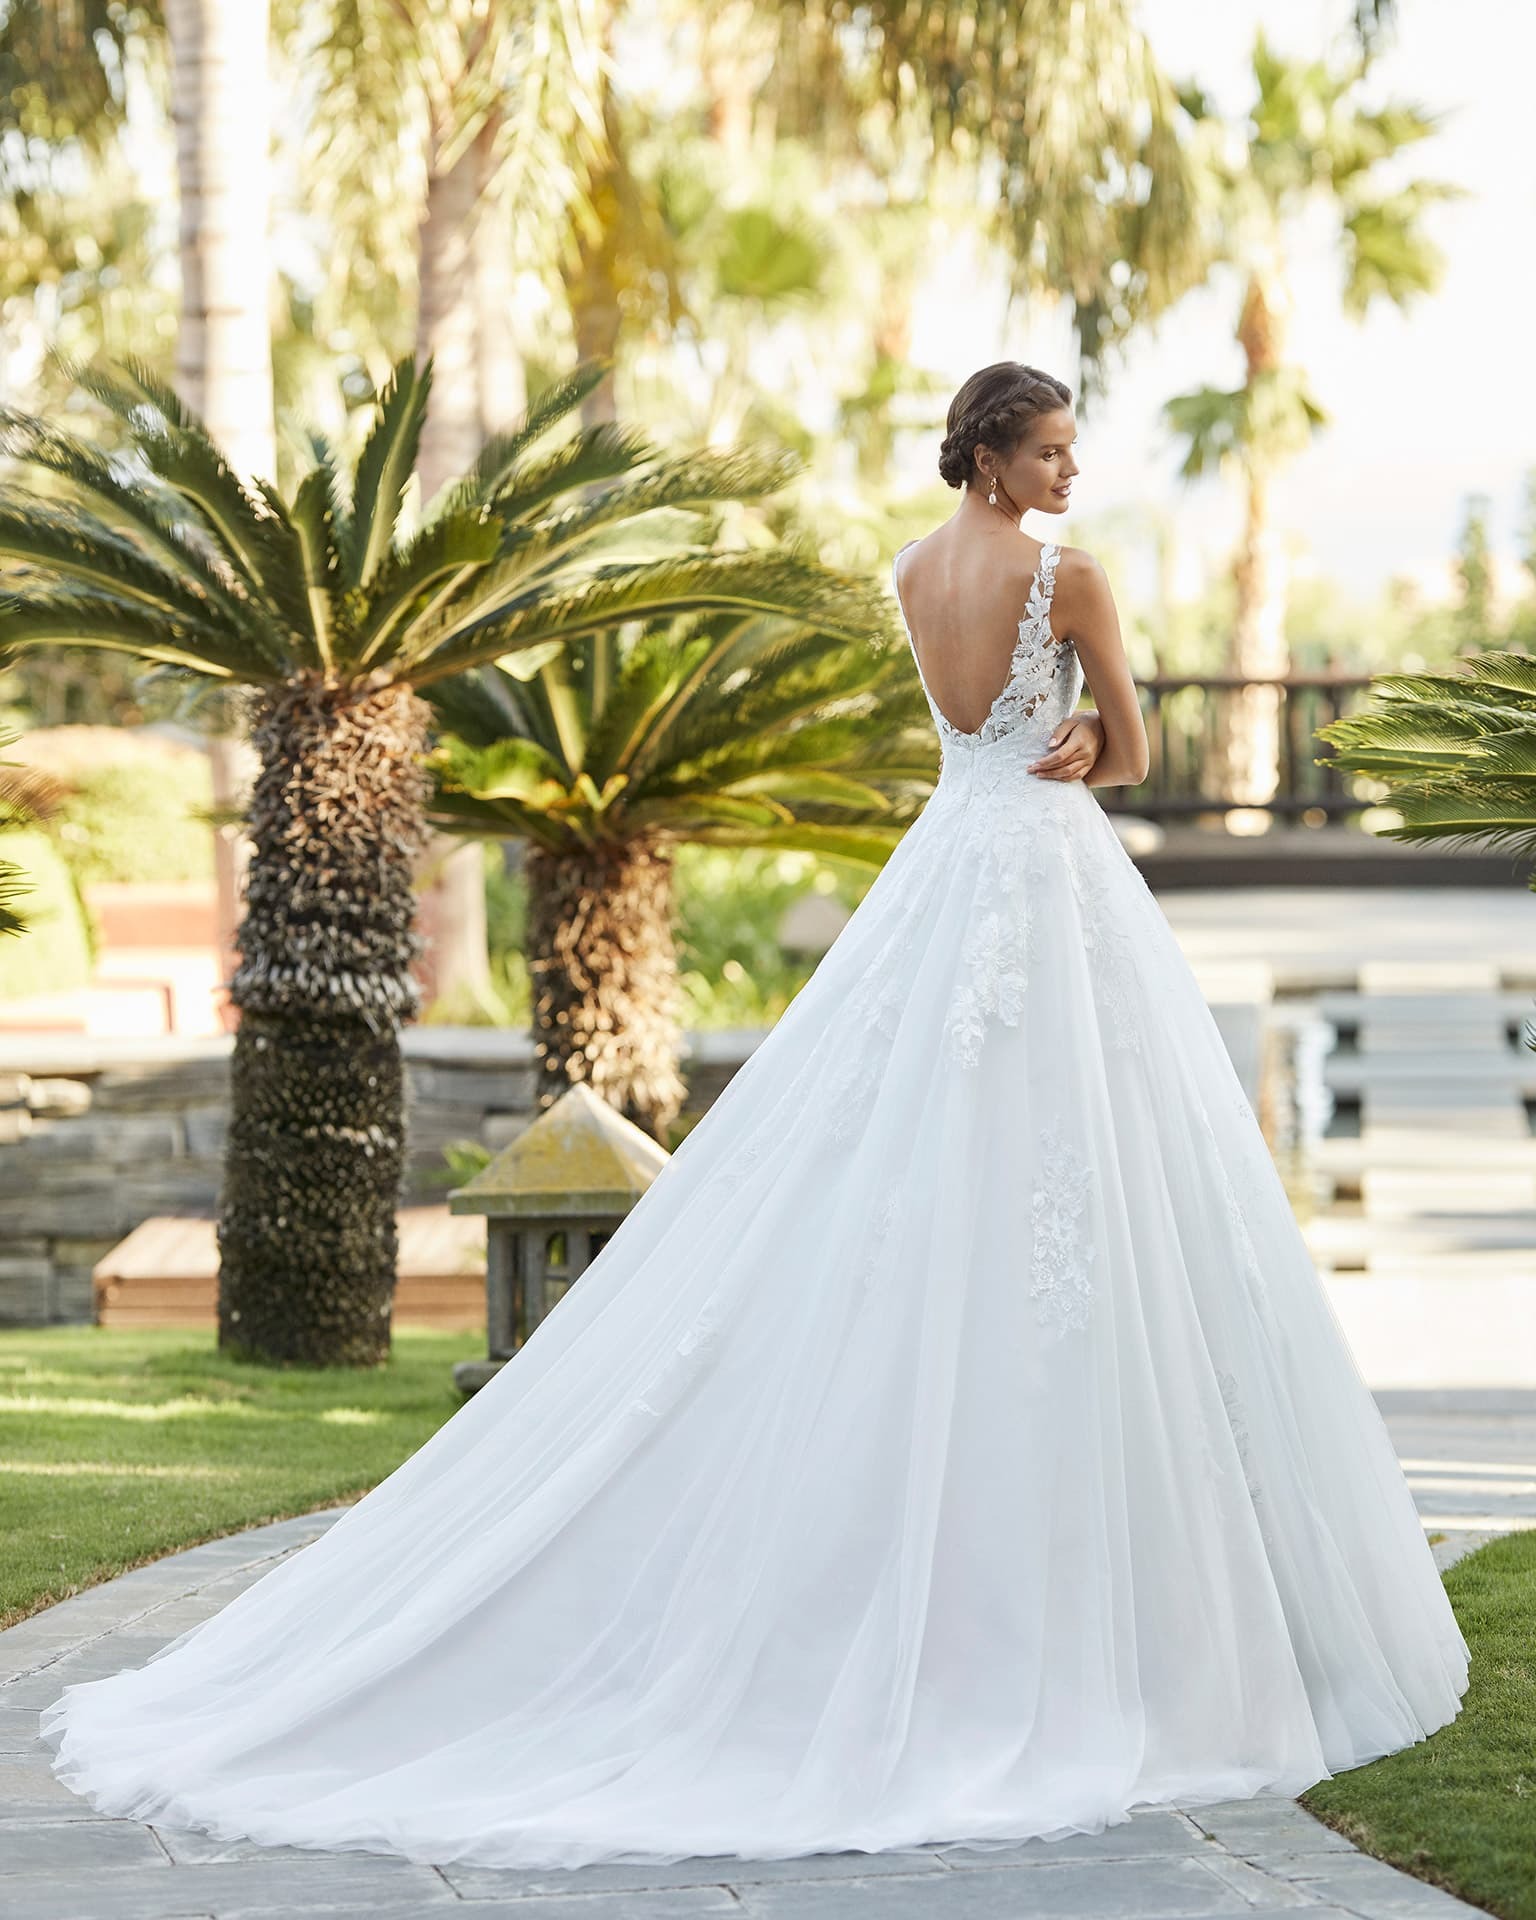 Obrázek ženy se svatebními šaty Zindel od značky Aire Barcelona